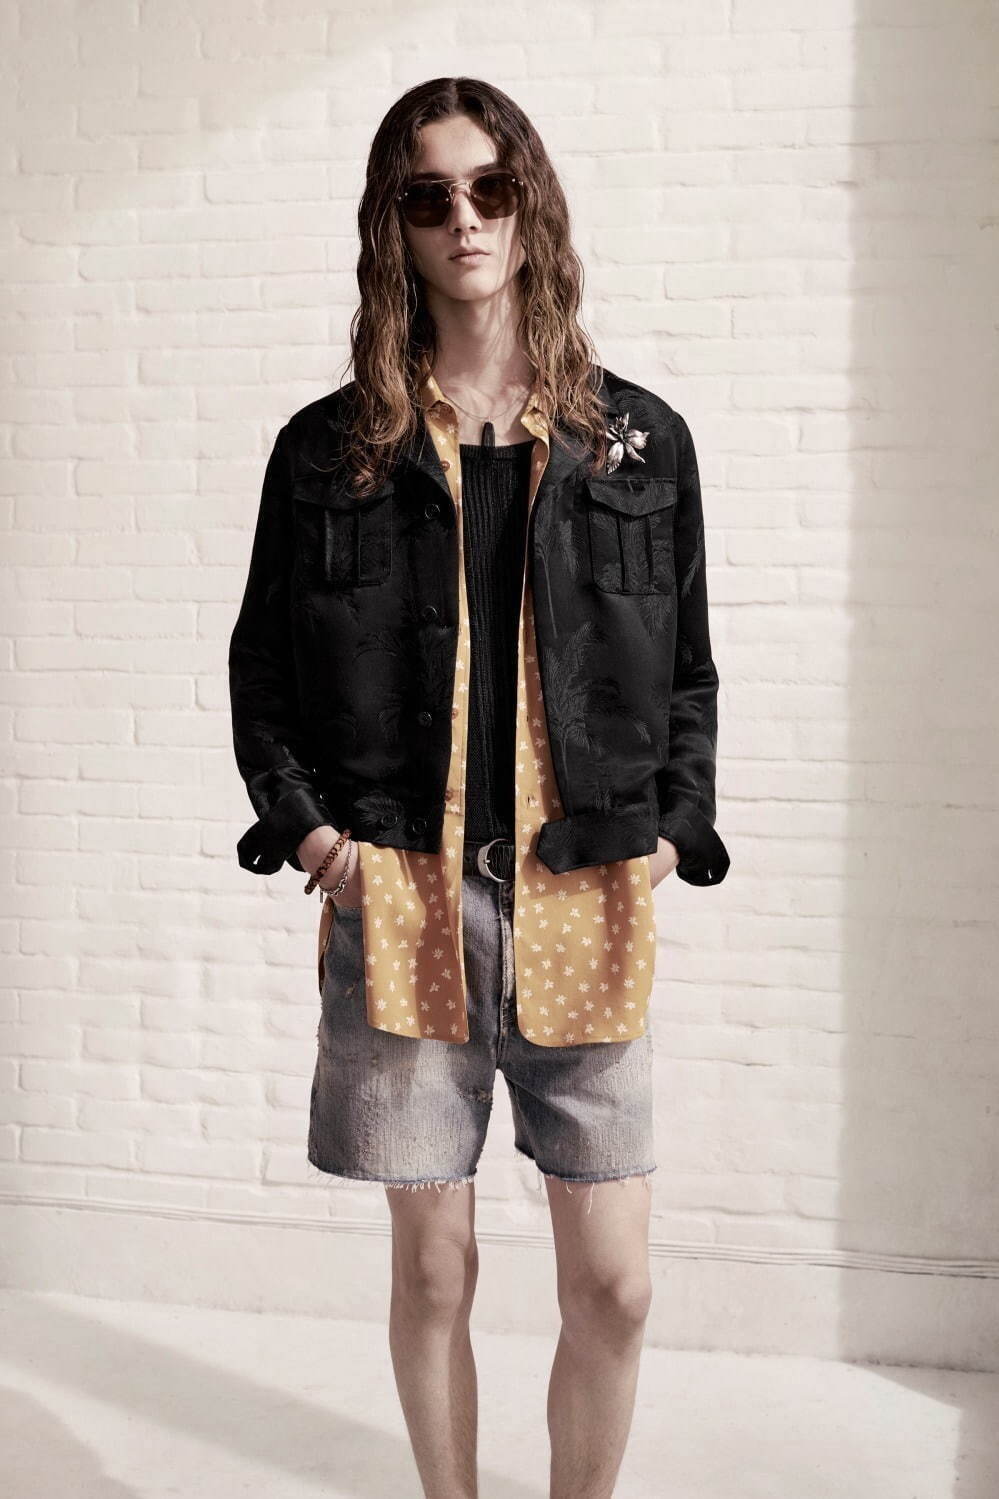 ハーフパンツのメンズ春コーデ シャツ ジャケット スプリングコートと合わせる軽やかな着こなし ファッションプレス